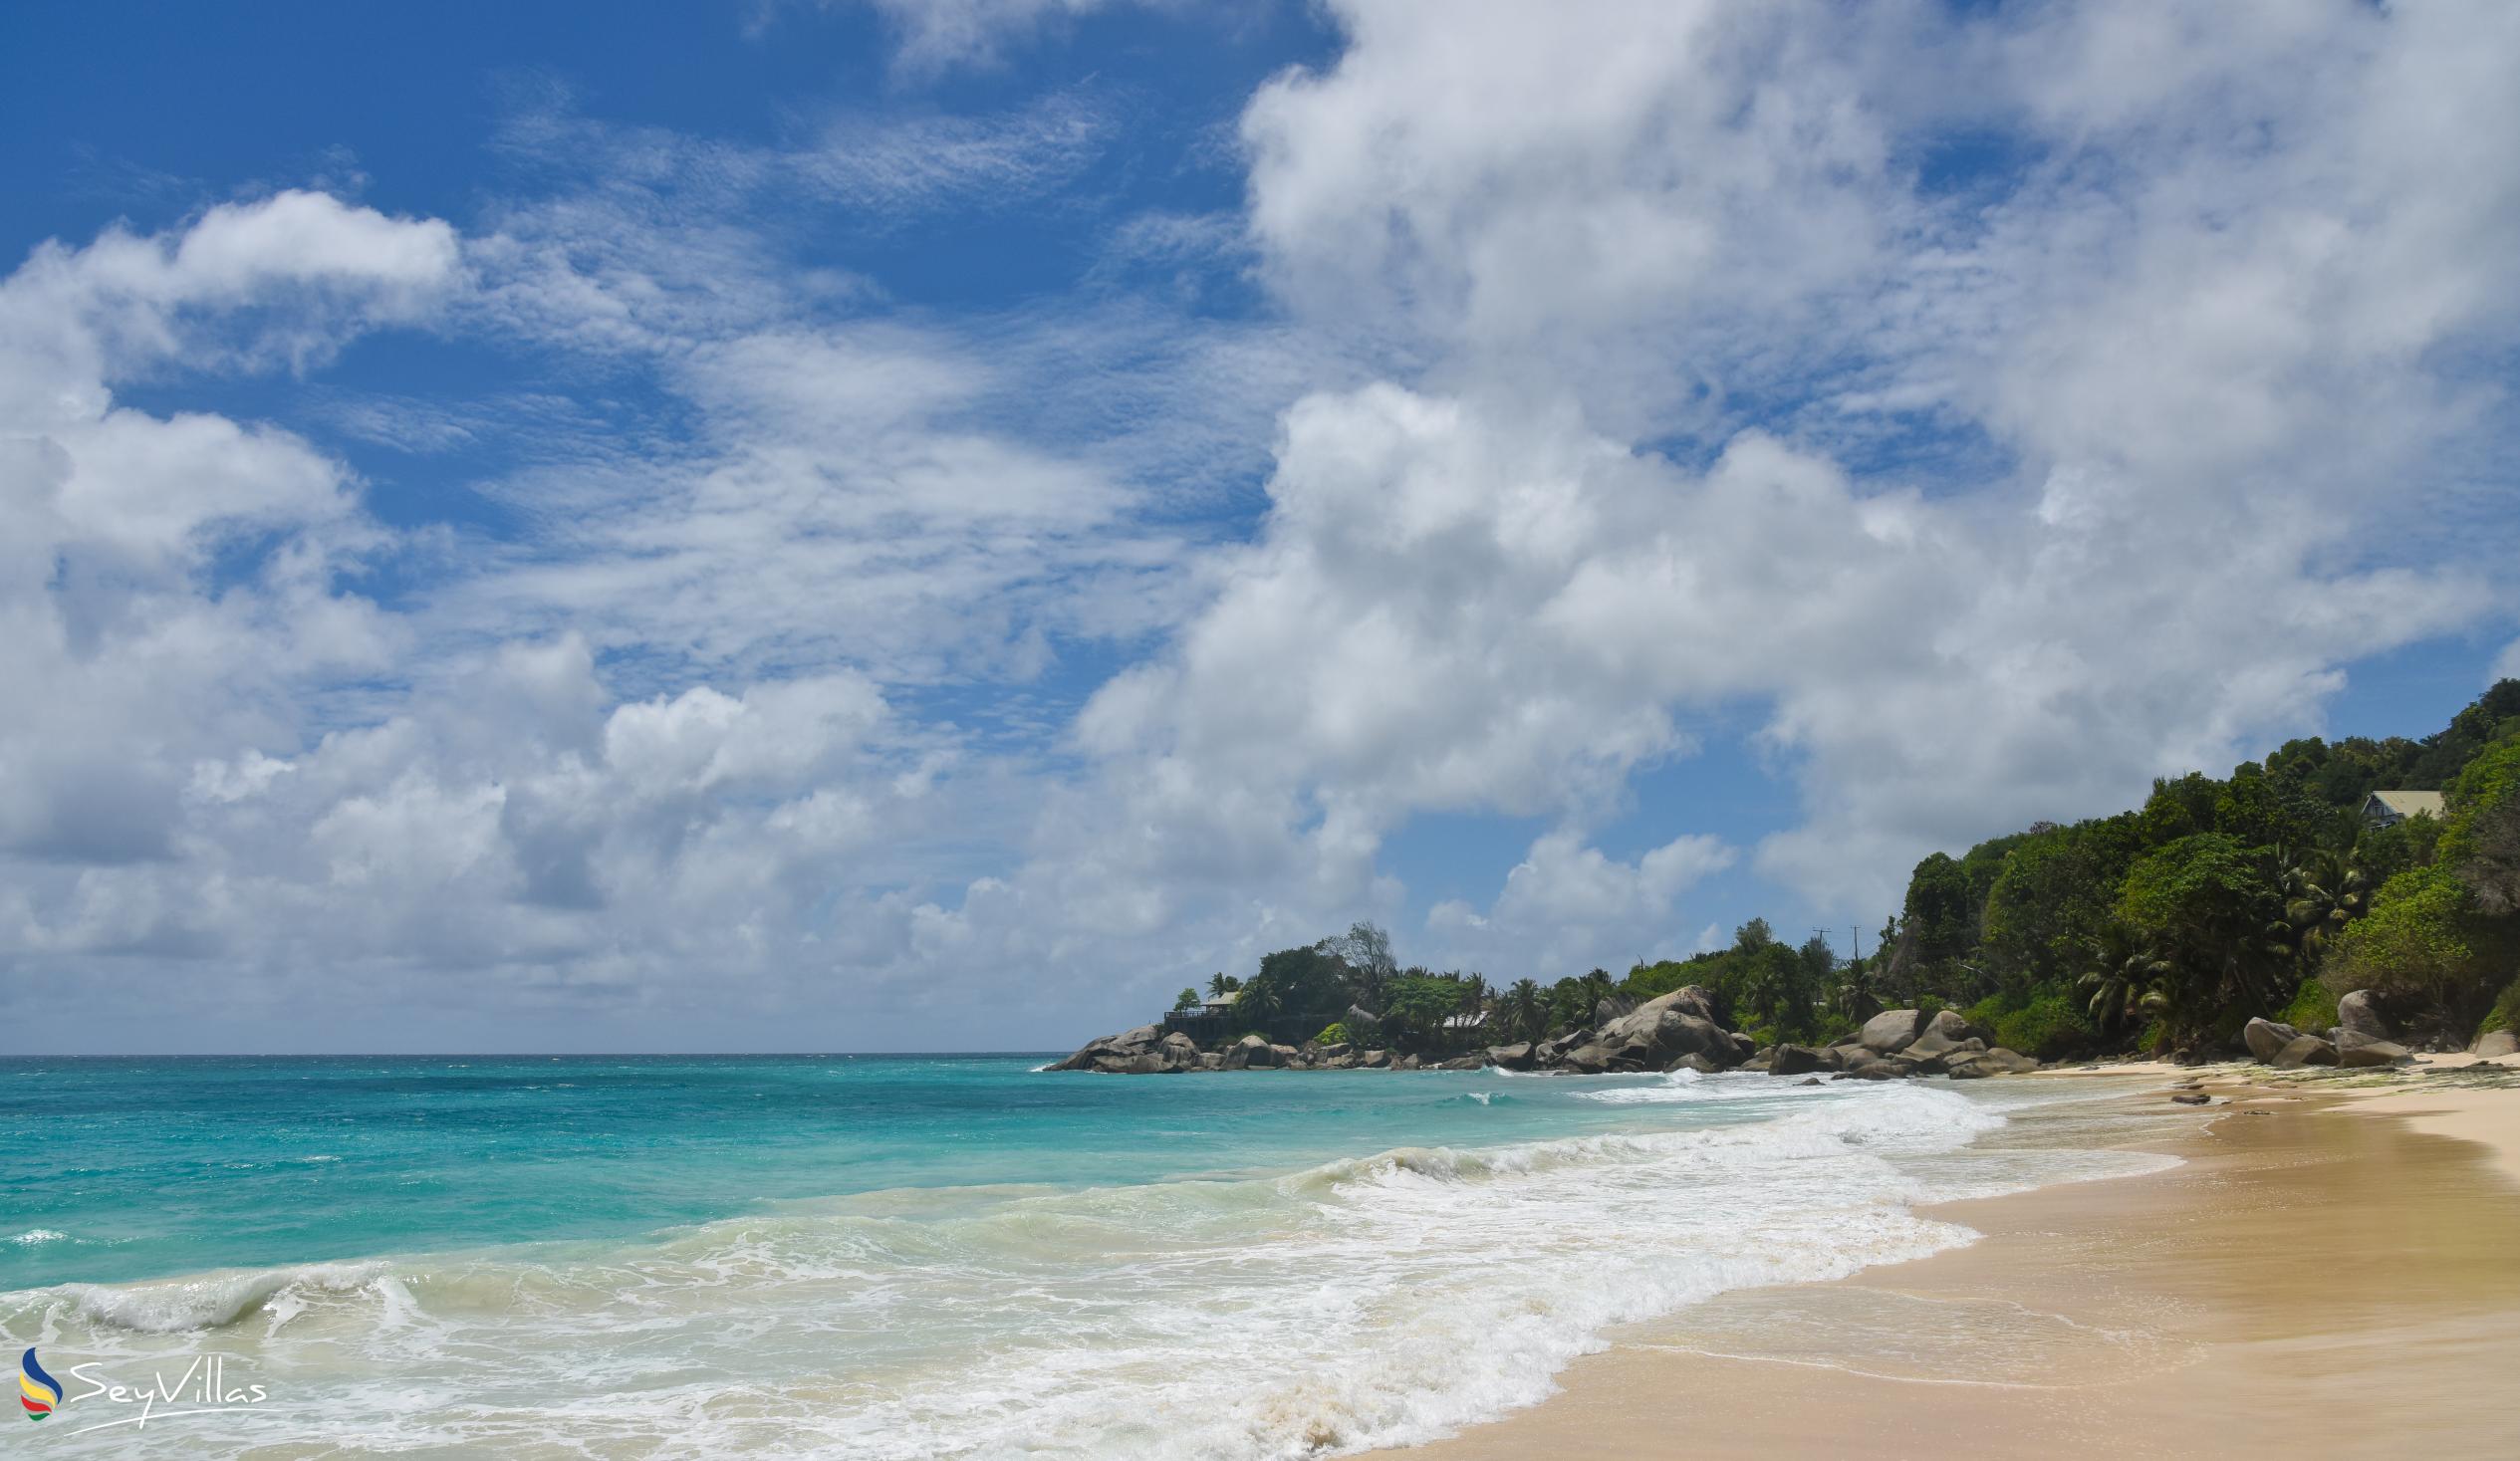 Photo 4: Carana Beach - Mahé (Seychelles)